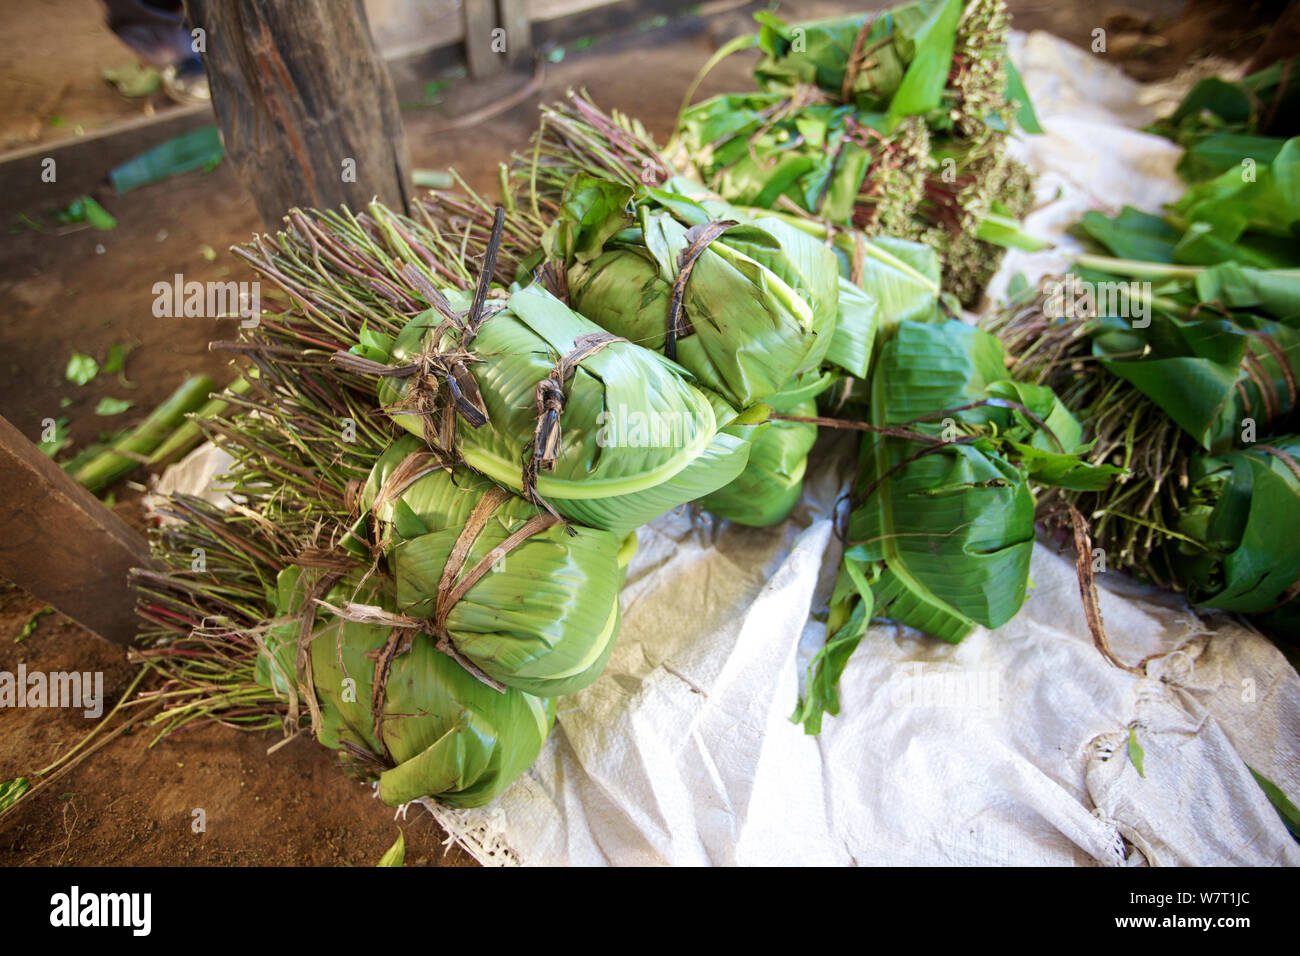 Bündel Khat (Catha edulis) in Bananenblättern Warten auf Verpackung und Transport, Maua, Meru, Kenia gewickelt Stockfoto